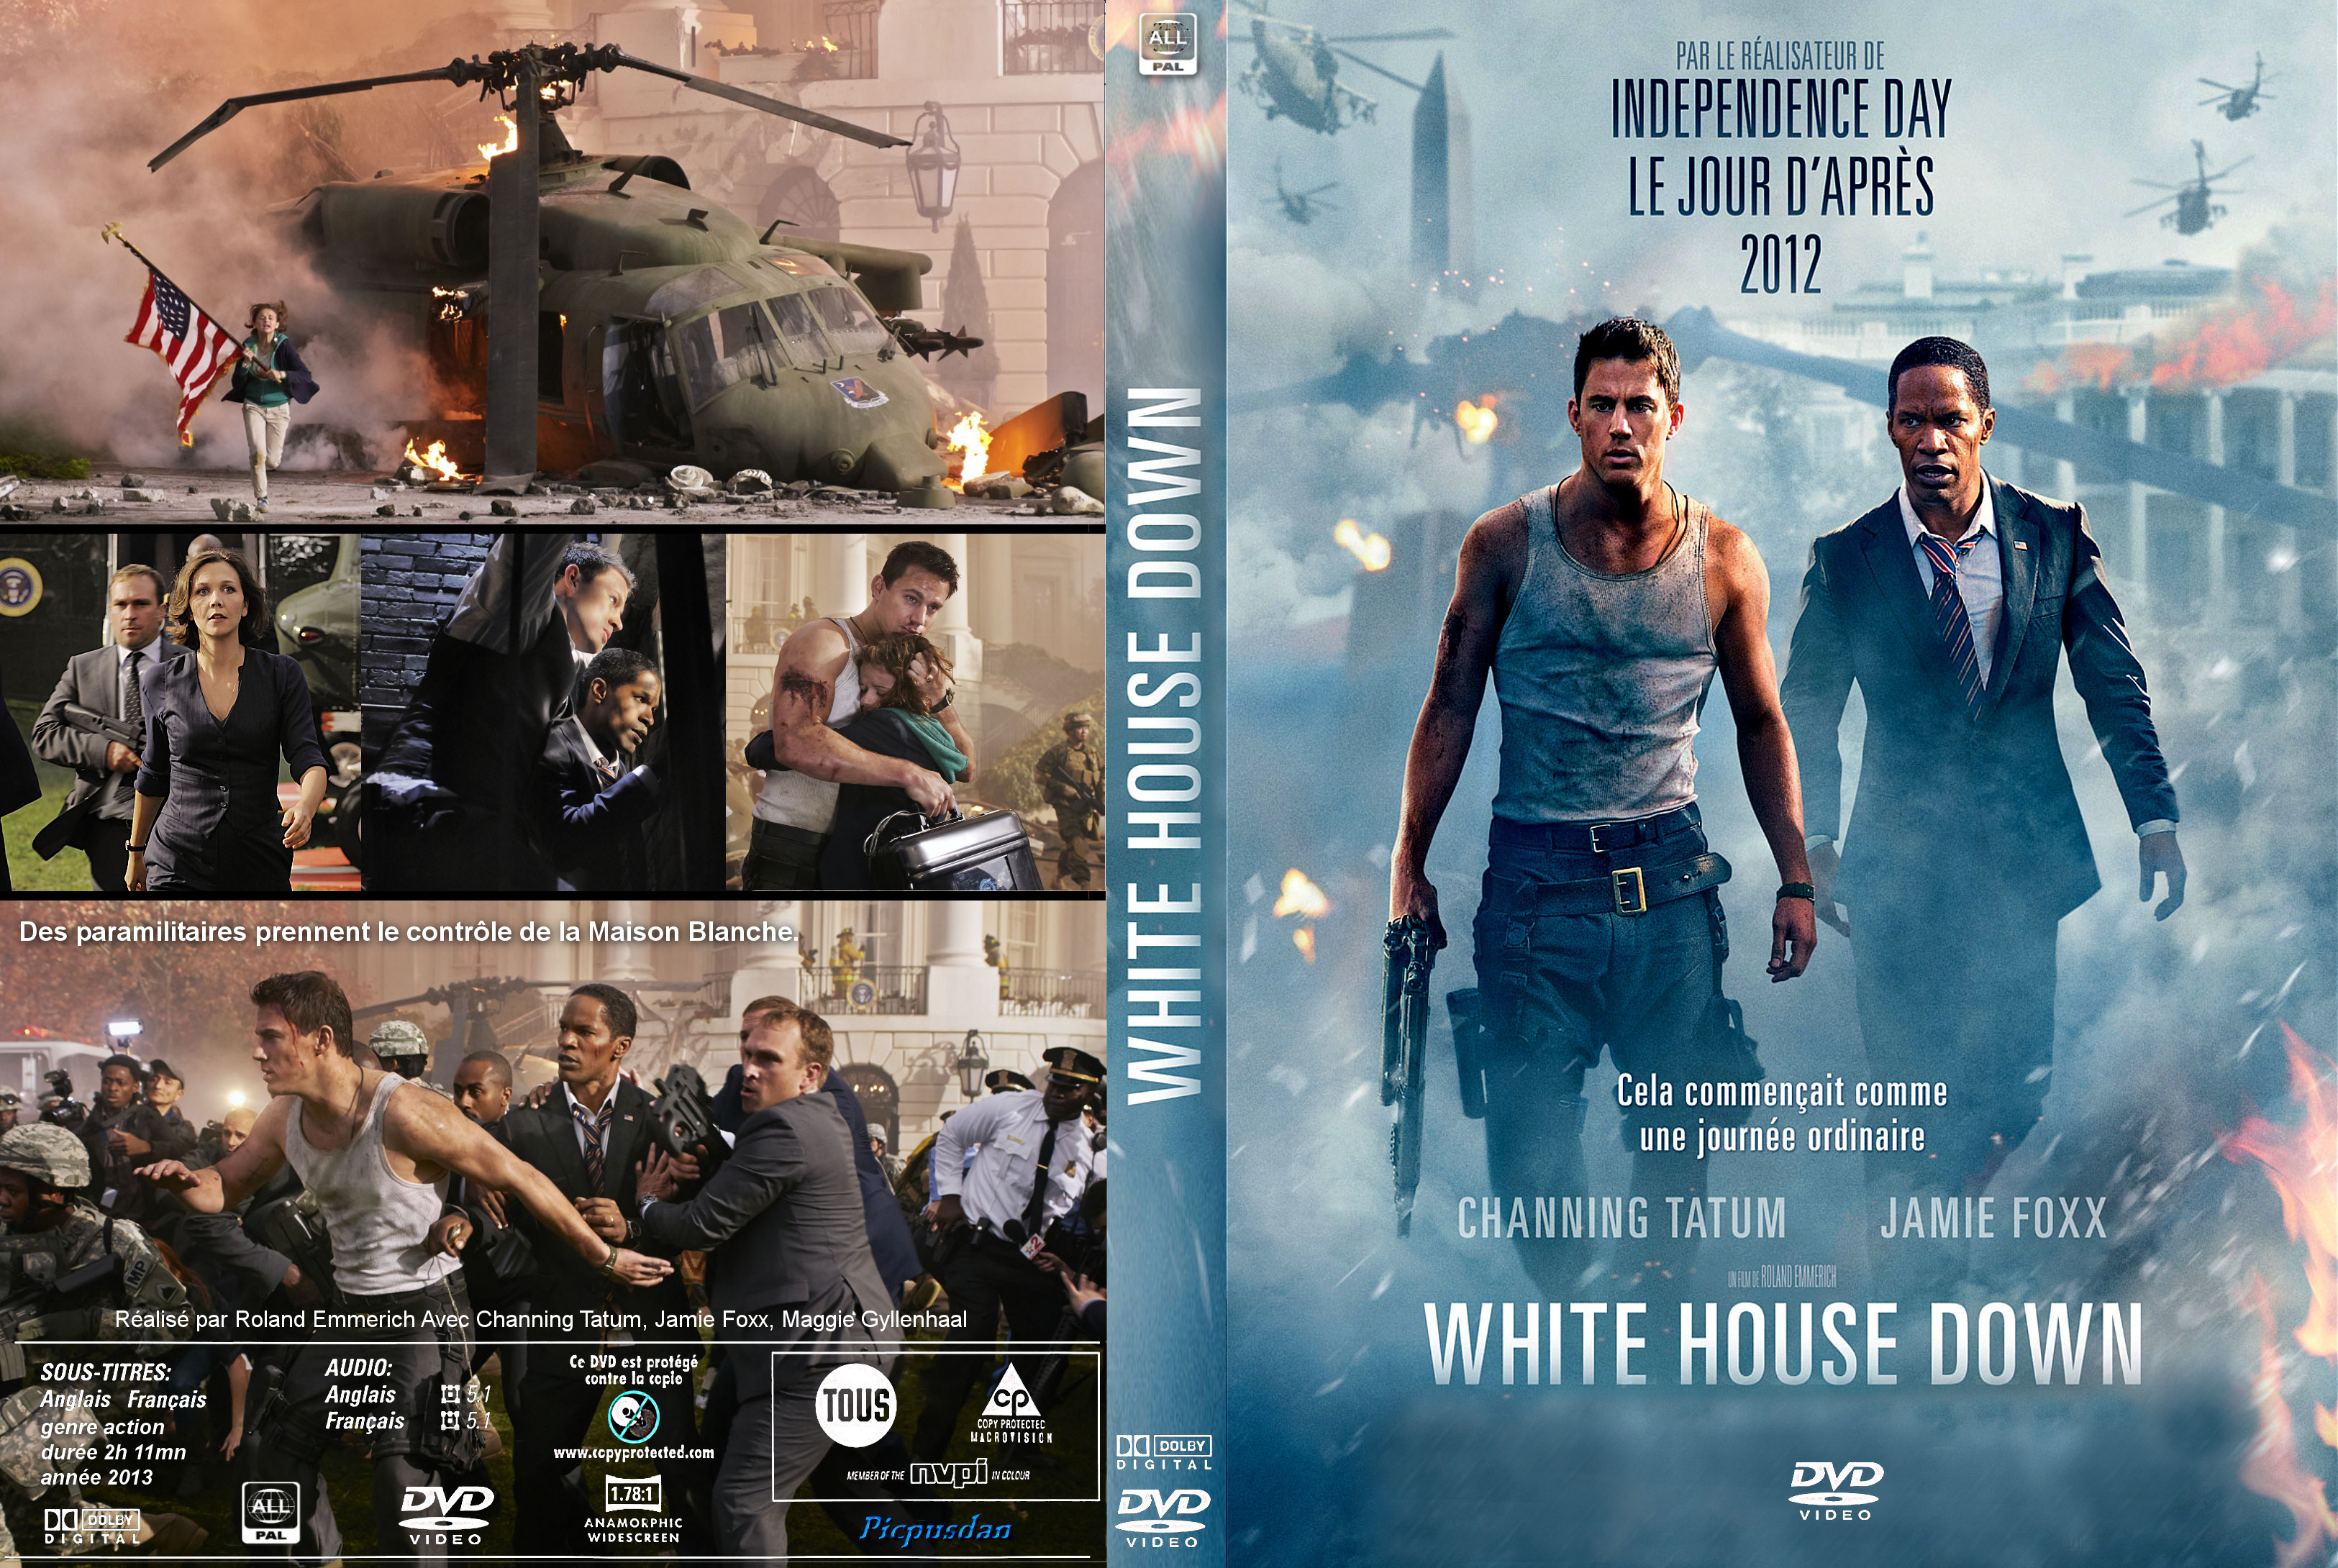 Jaquette DVD White House Down custom v2